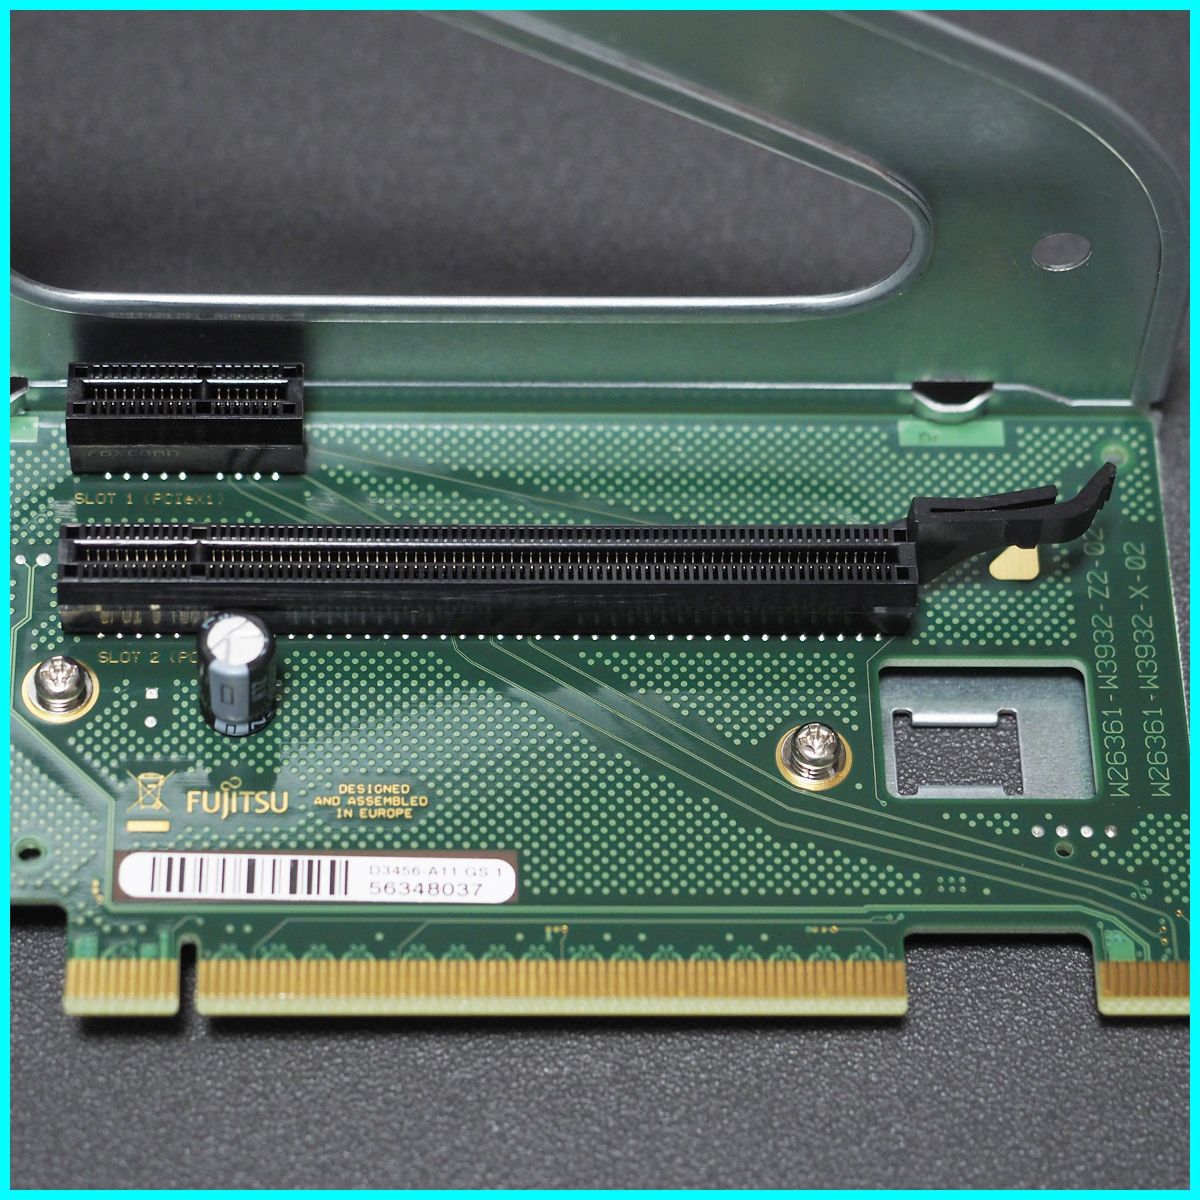 富士通 ESPRIMO D588/VW PCIE ライザーカード D3456-A11 GS 1 ブラケット PCIスロットカバー付